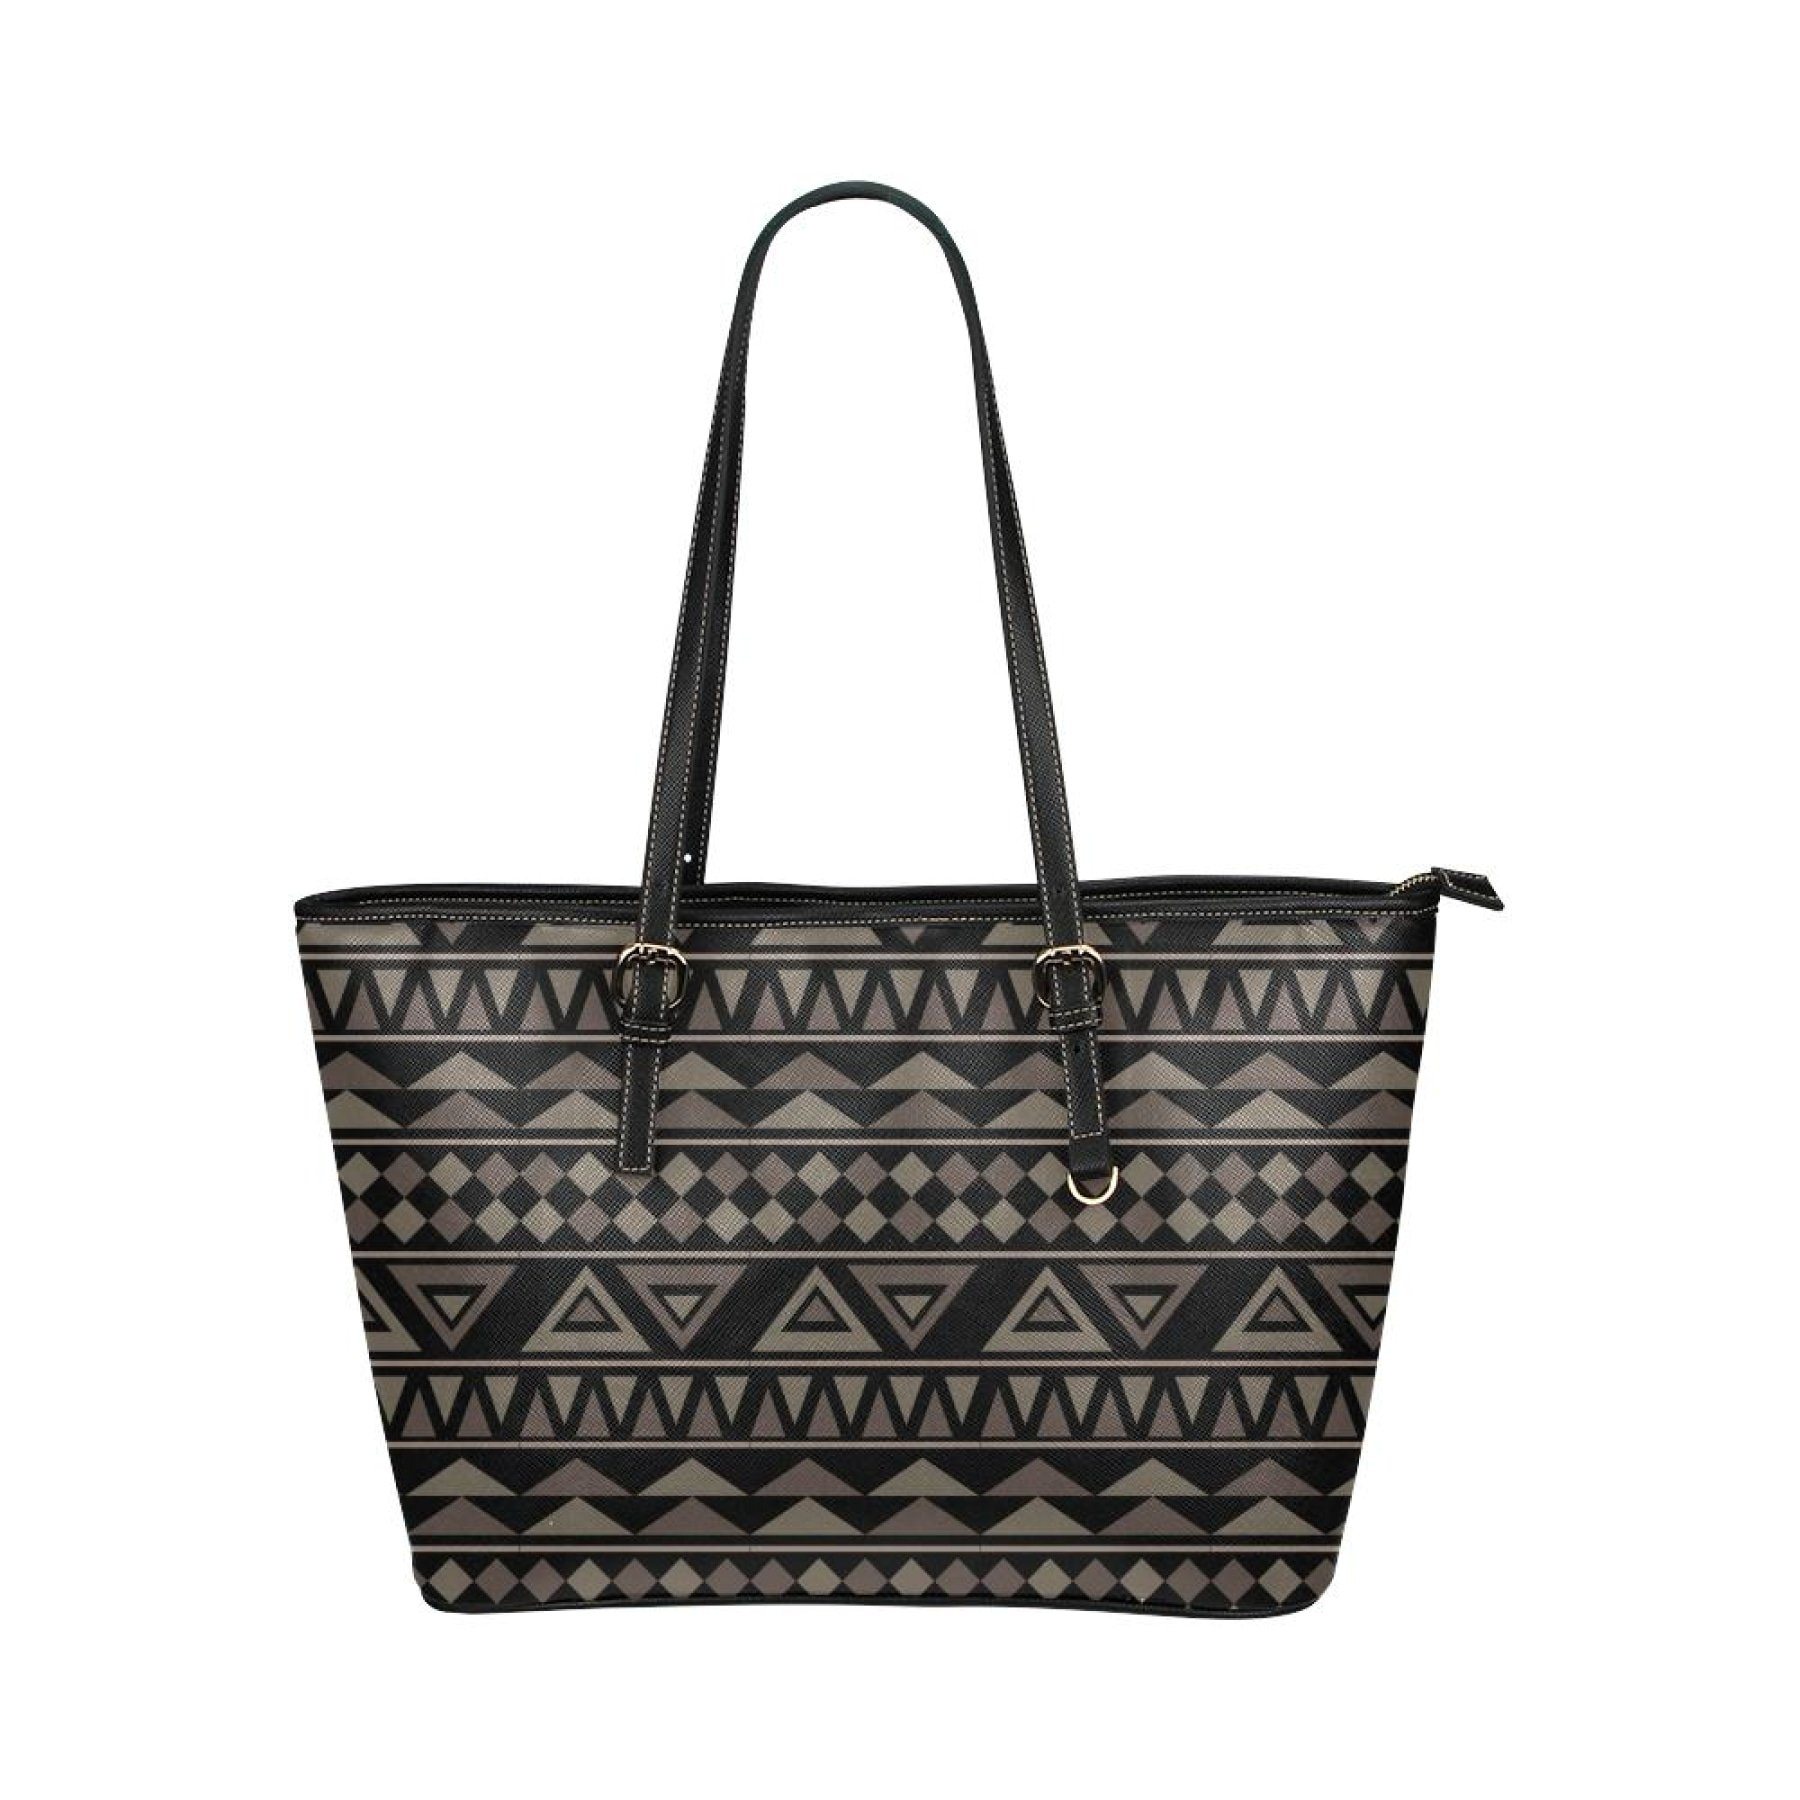 Black Tote Shoulder Bag With Aztec Design 23